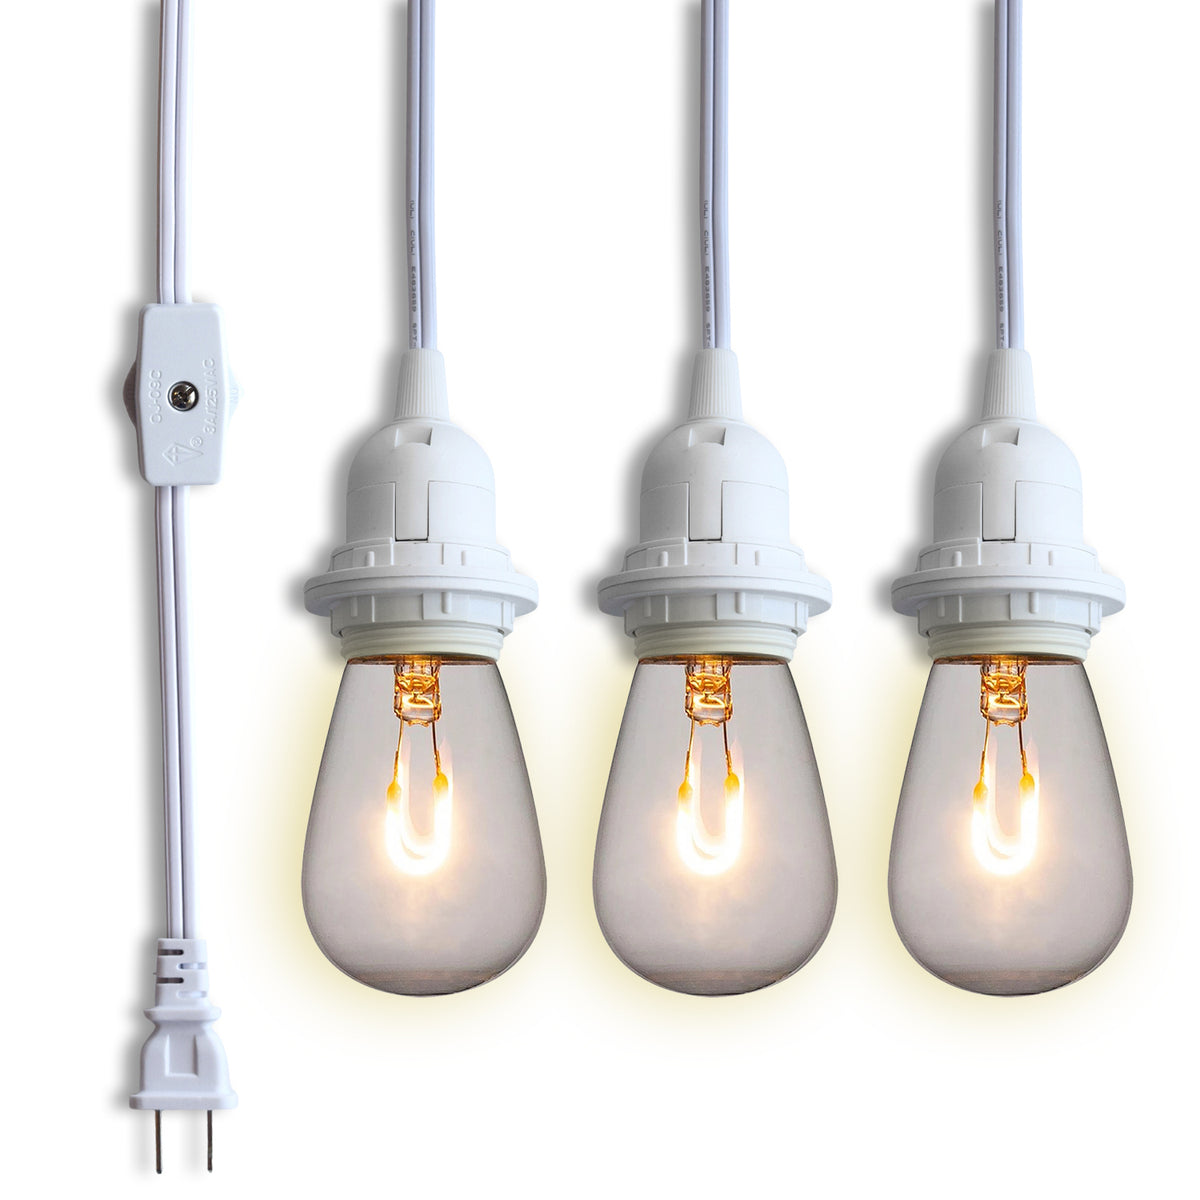 Triple Socket White Pendant Light Lamp Cord for Lanterns, Switch, 19 FT